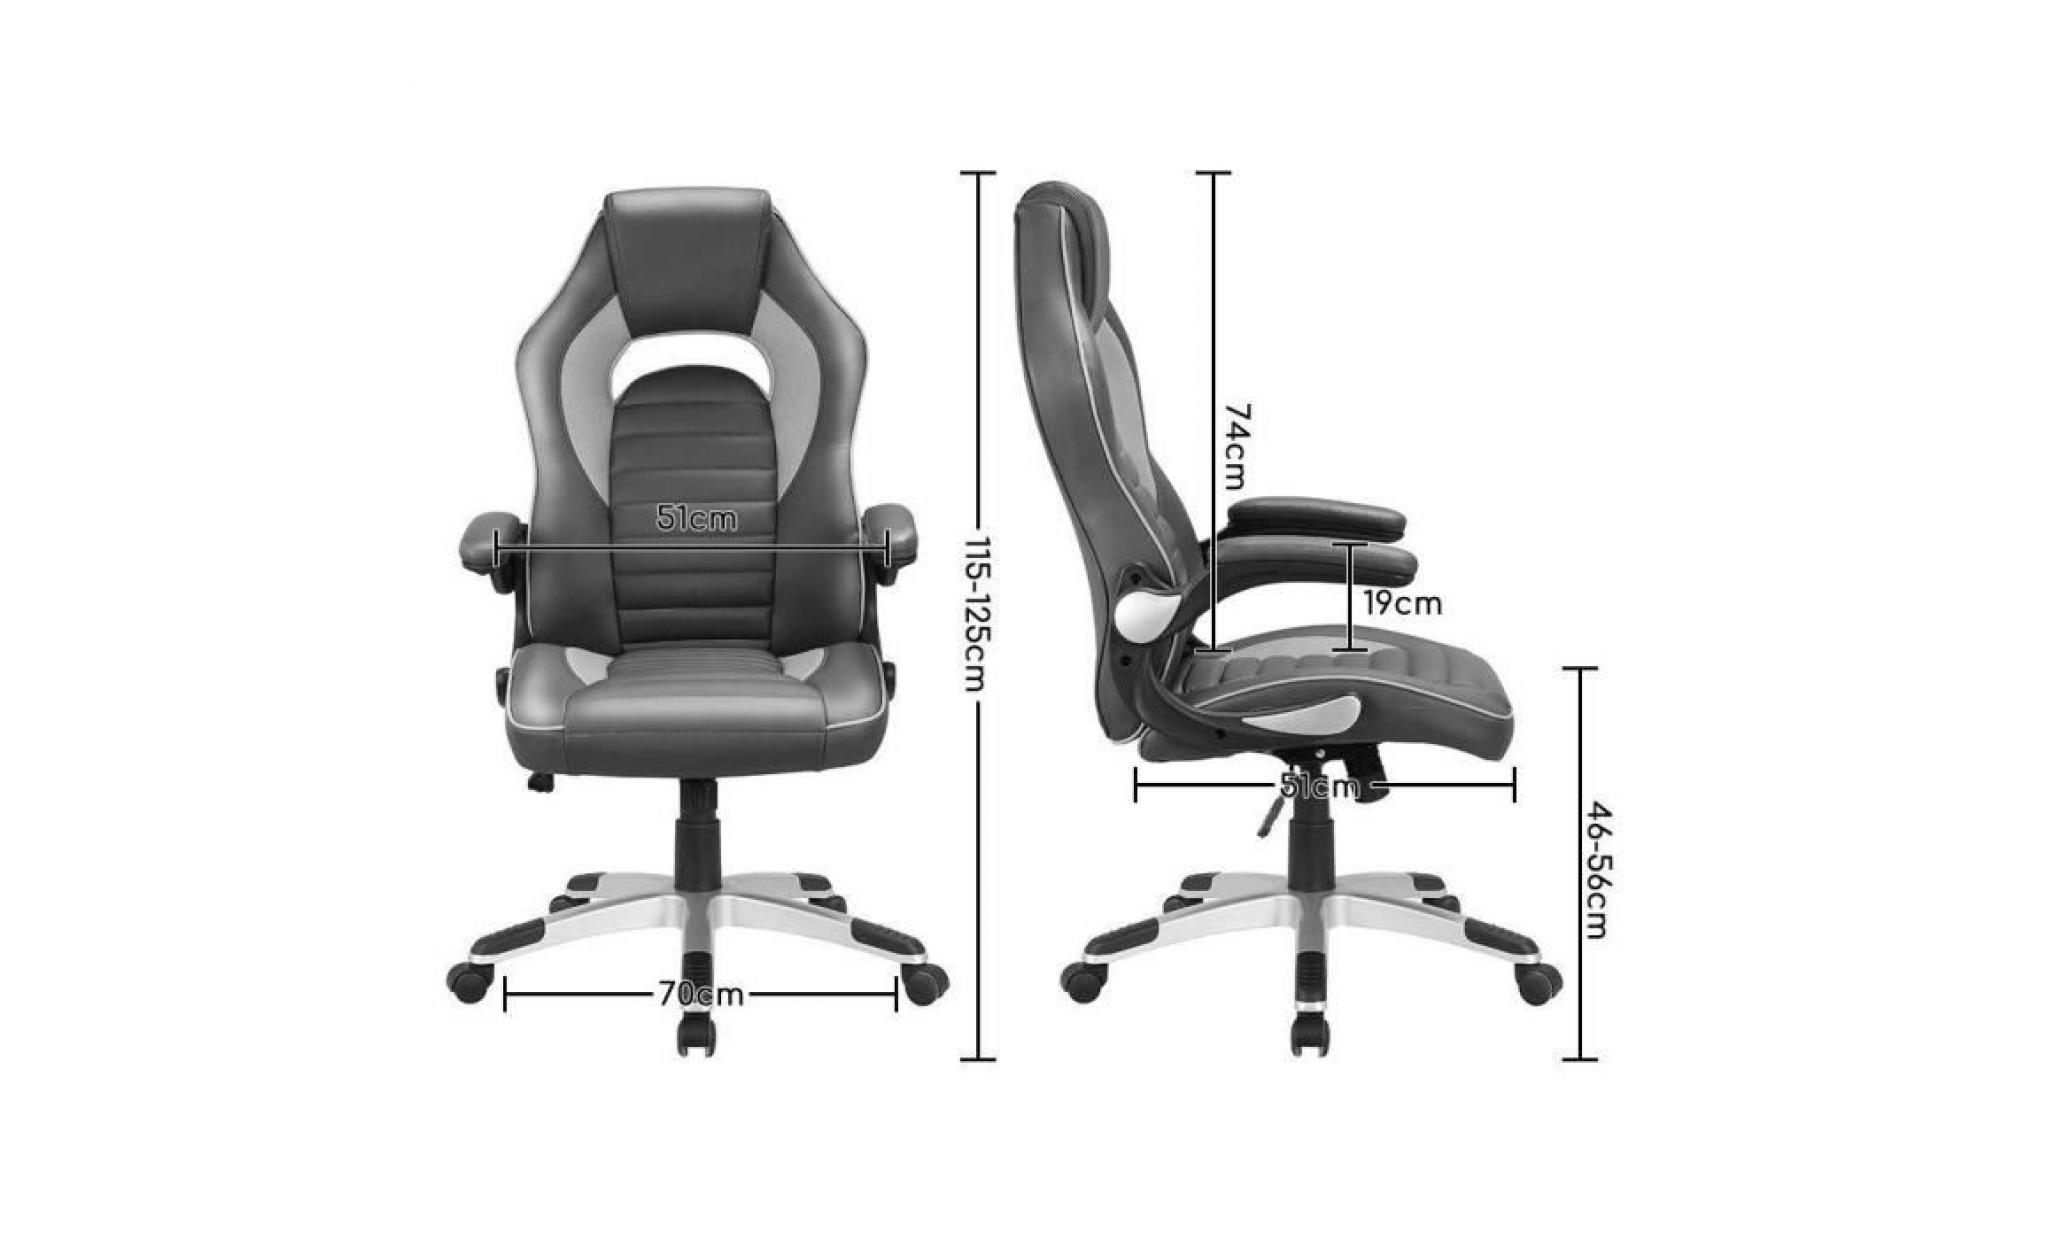 chaise gamer   fauteu de bureau anti fatigue   moderne confortable ergonomique   hauteur réglable   rouge   intimate wm heart pas cher